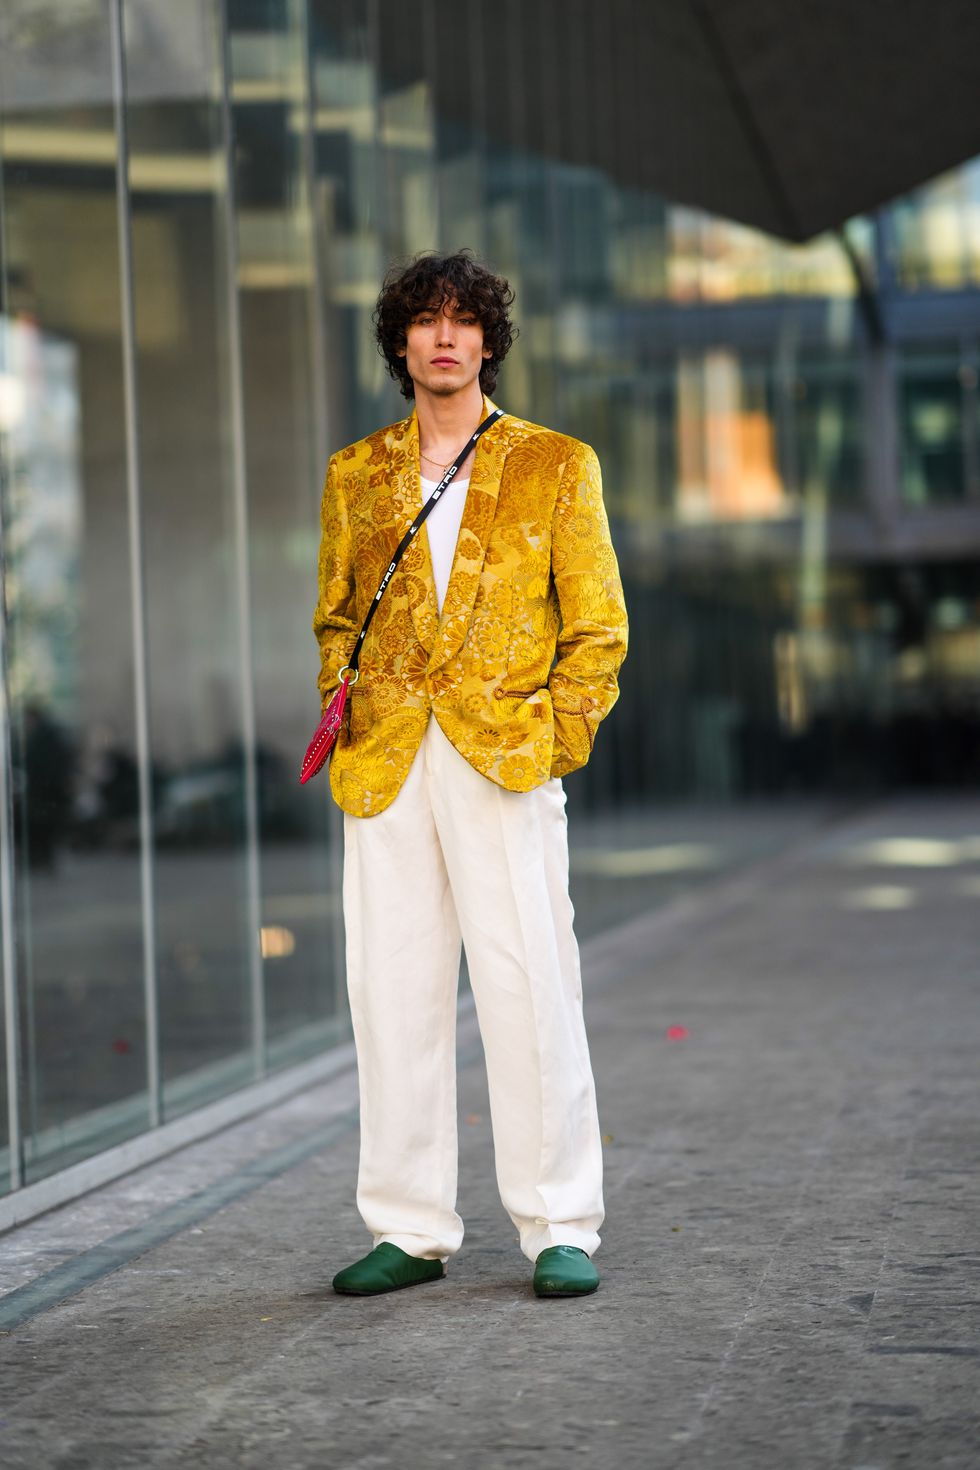 MODA: Camisetas de rayas para un look de estilo parisino que encontrarás en  las rebajas de Massimo Dutti